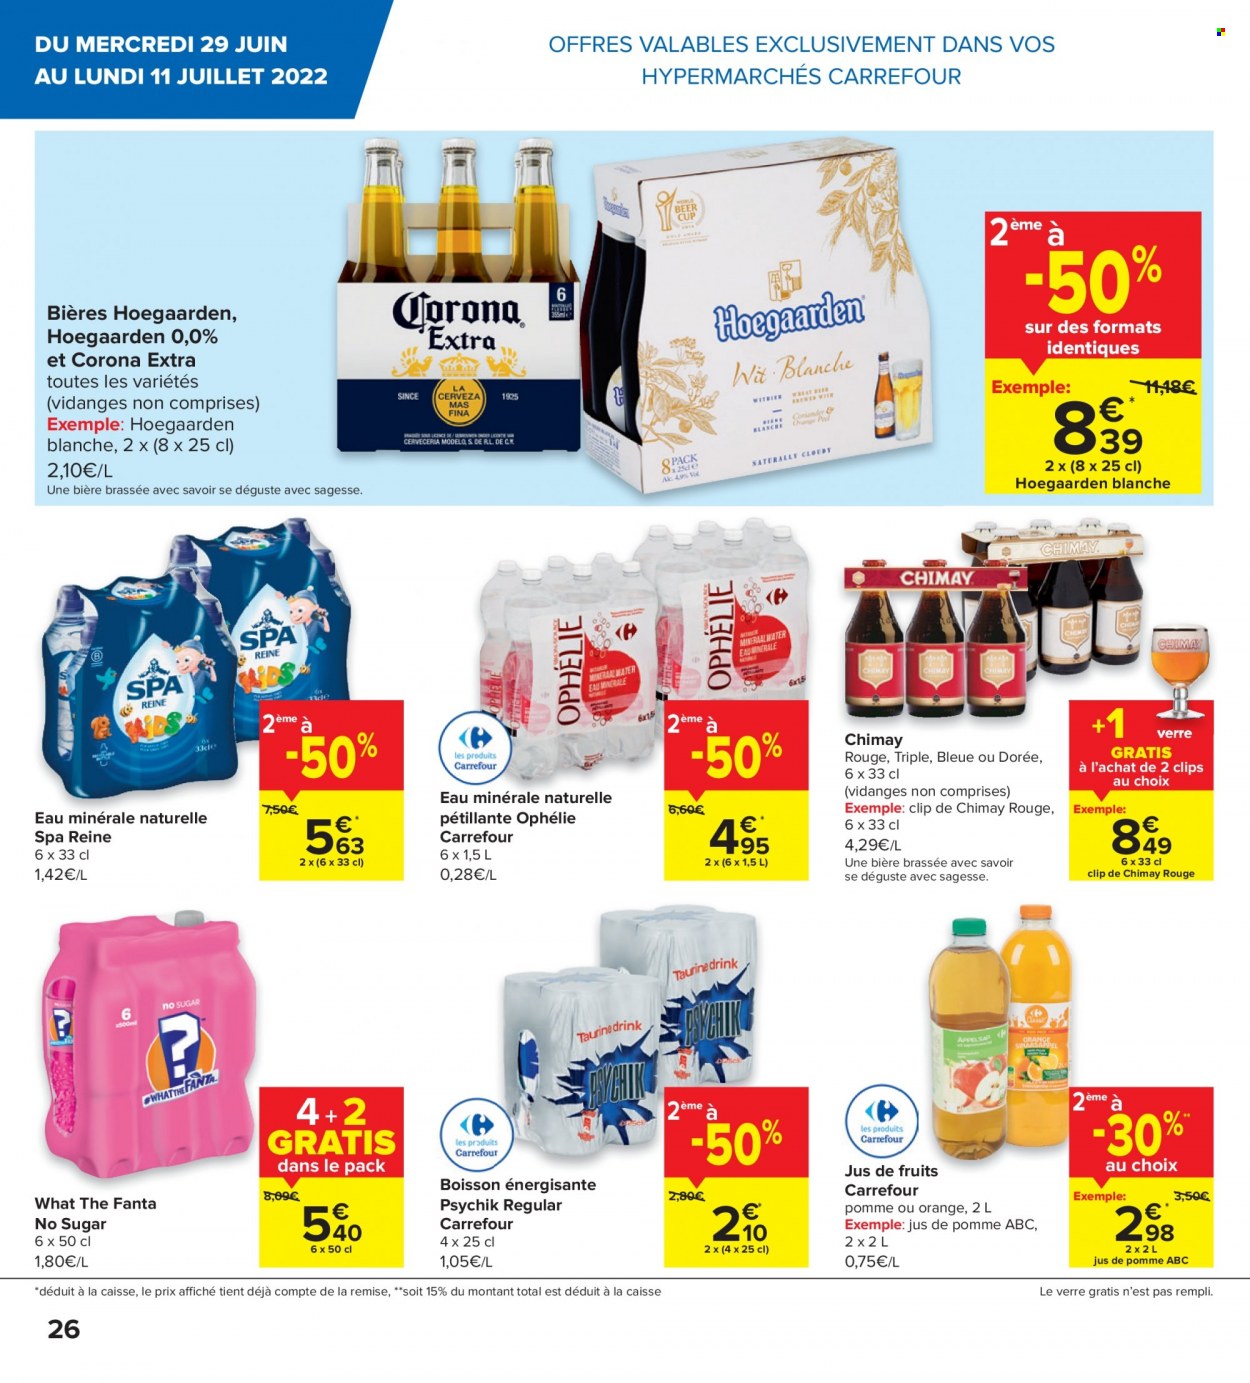 thumbnail - Catalogue Carrefour hypermarkt - 29/06/2022 - 11/07/2022 - Produits soldés - jus, Fanta, jus de pomme, eau minérale, eau minérale naturelle, Corona Extra, verre. Page 6.